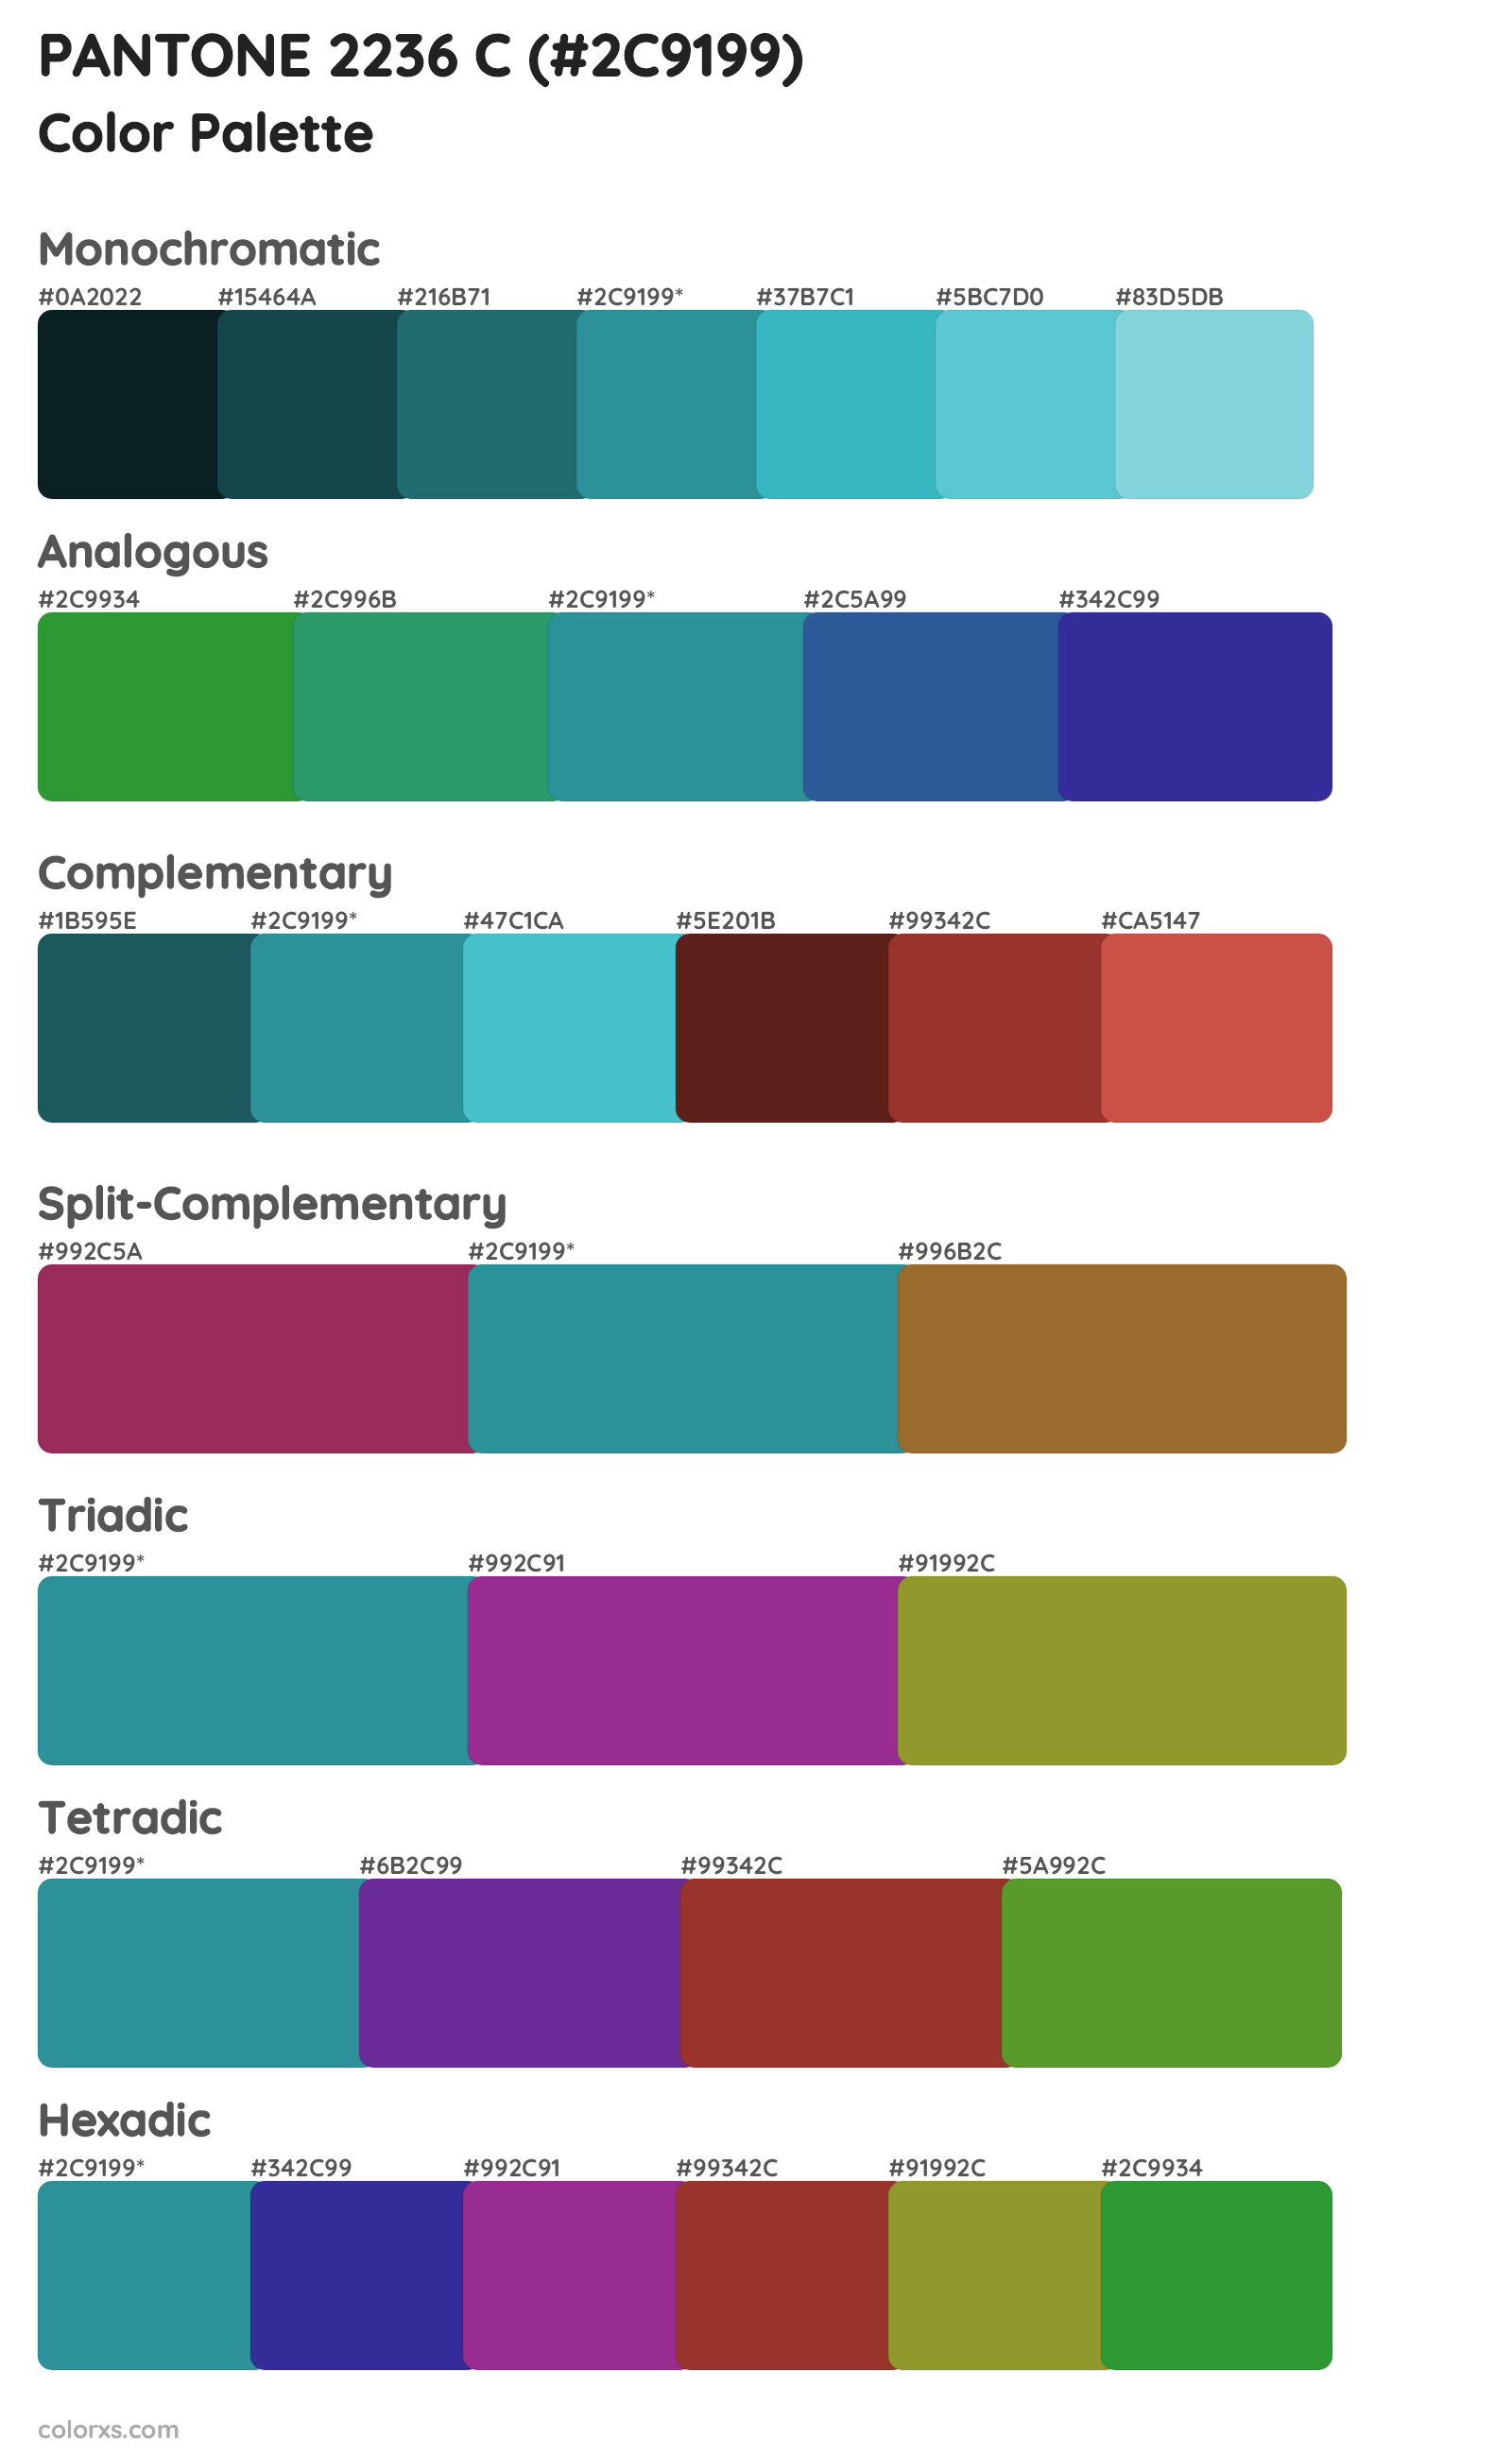 PANTONE 2236 C Color Scheme Palettes